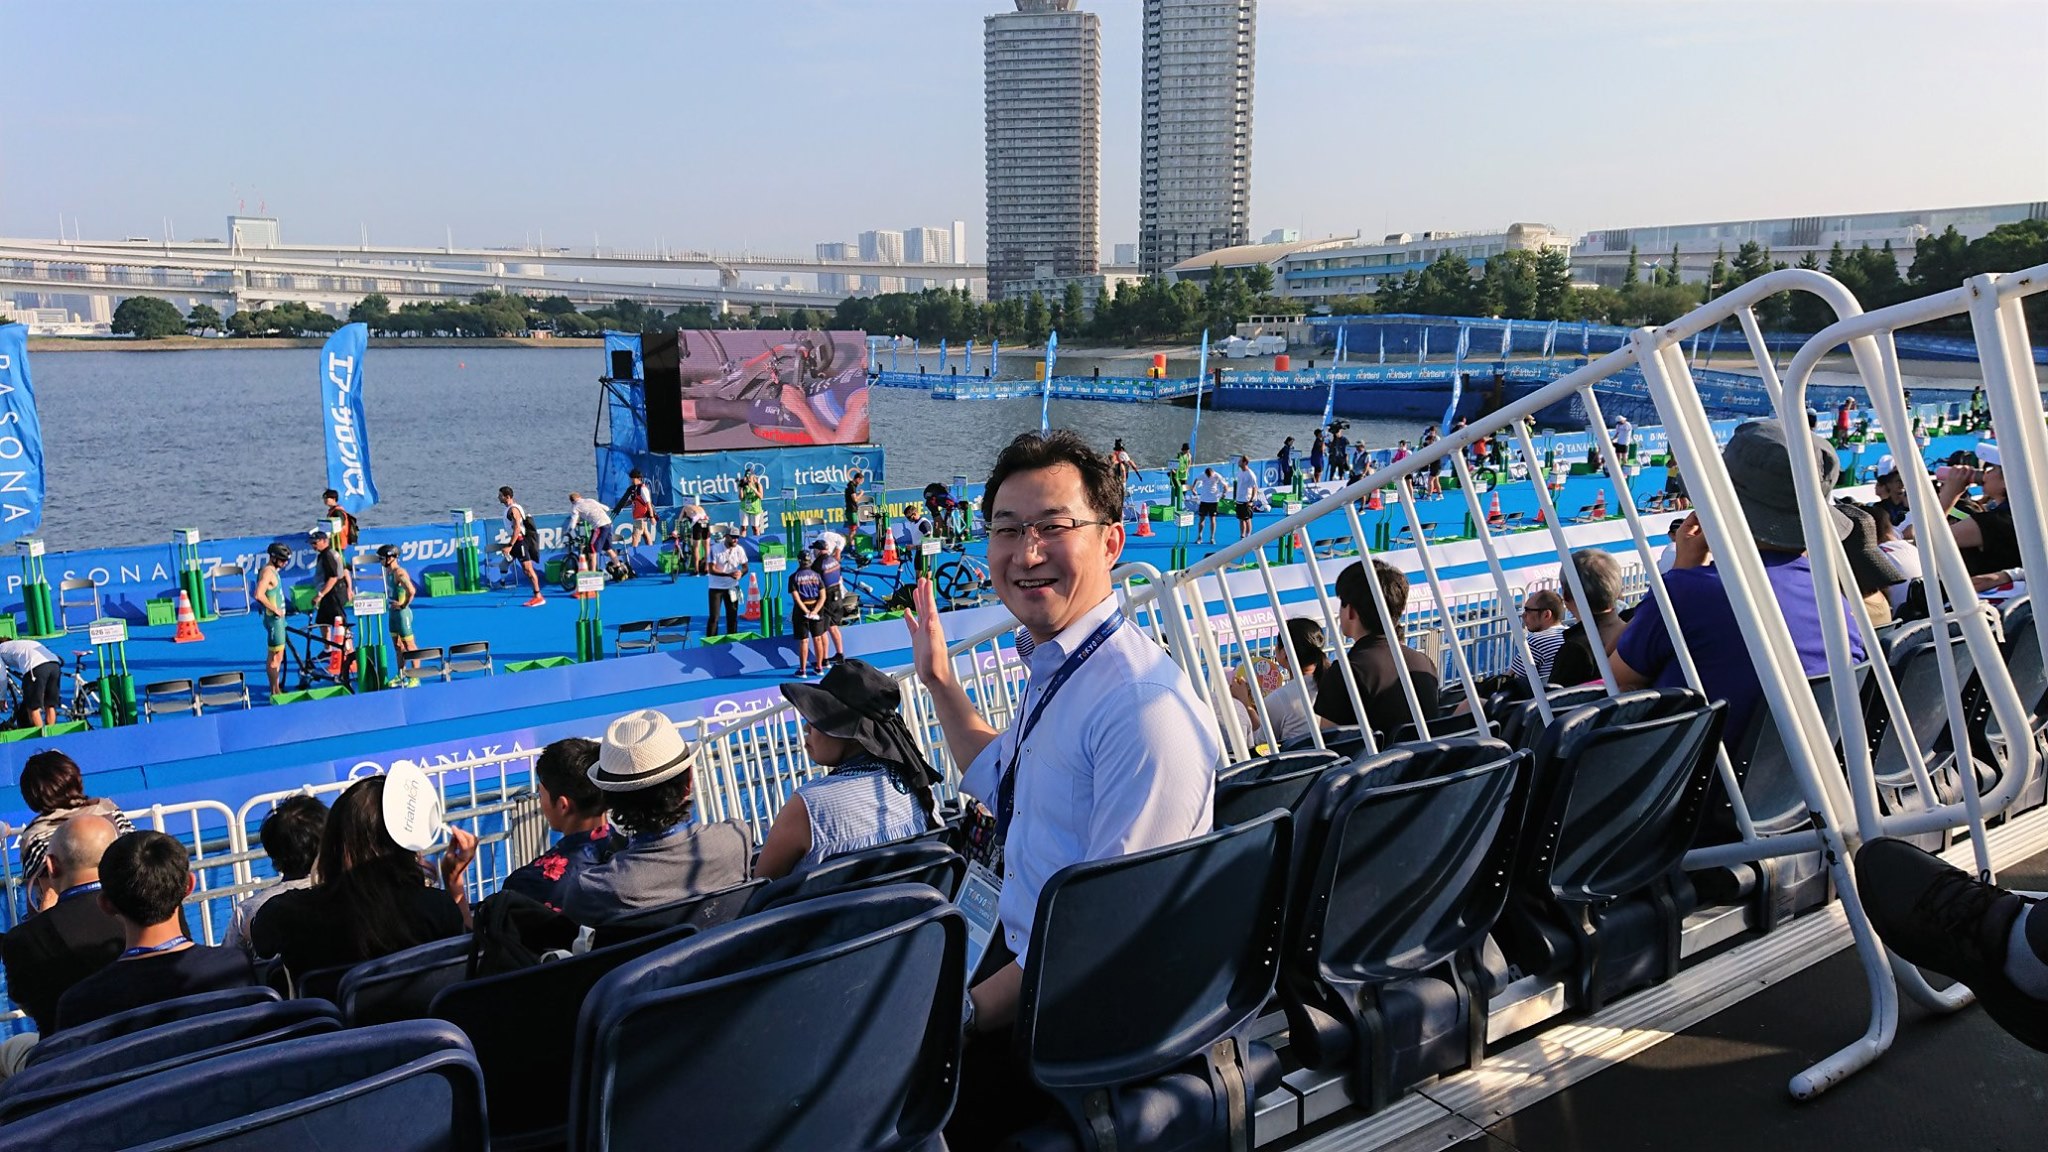 【2019年8月17日】パラリンピックテストイベントを視察しました